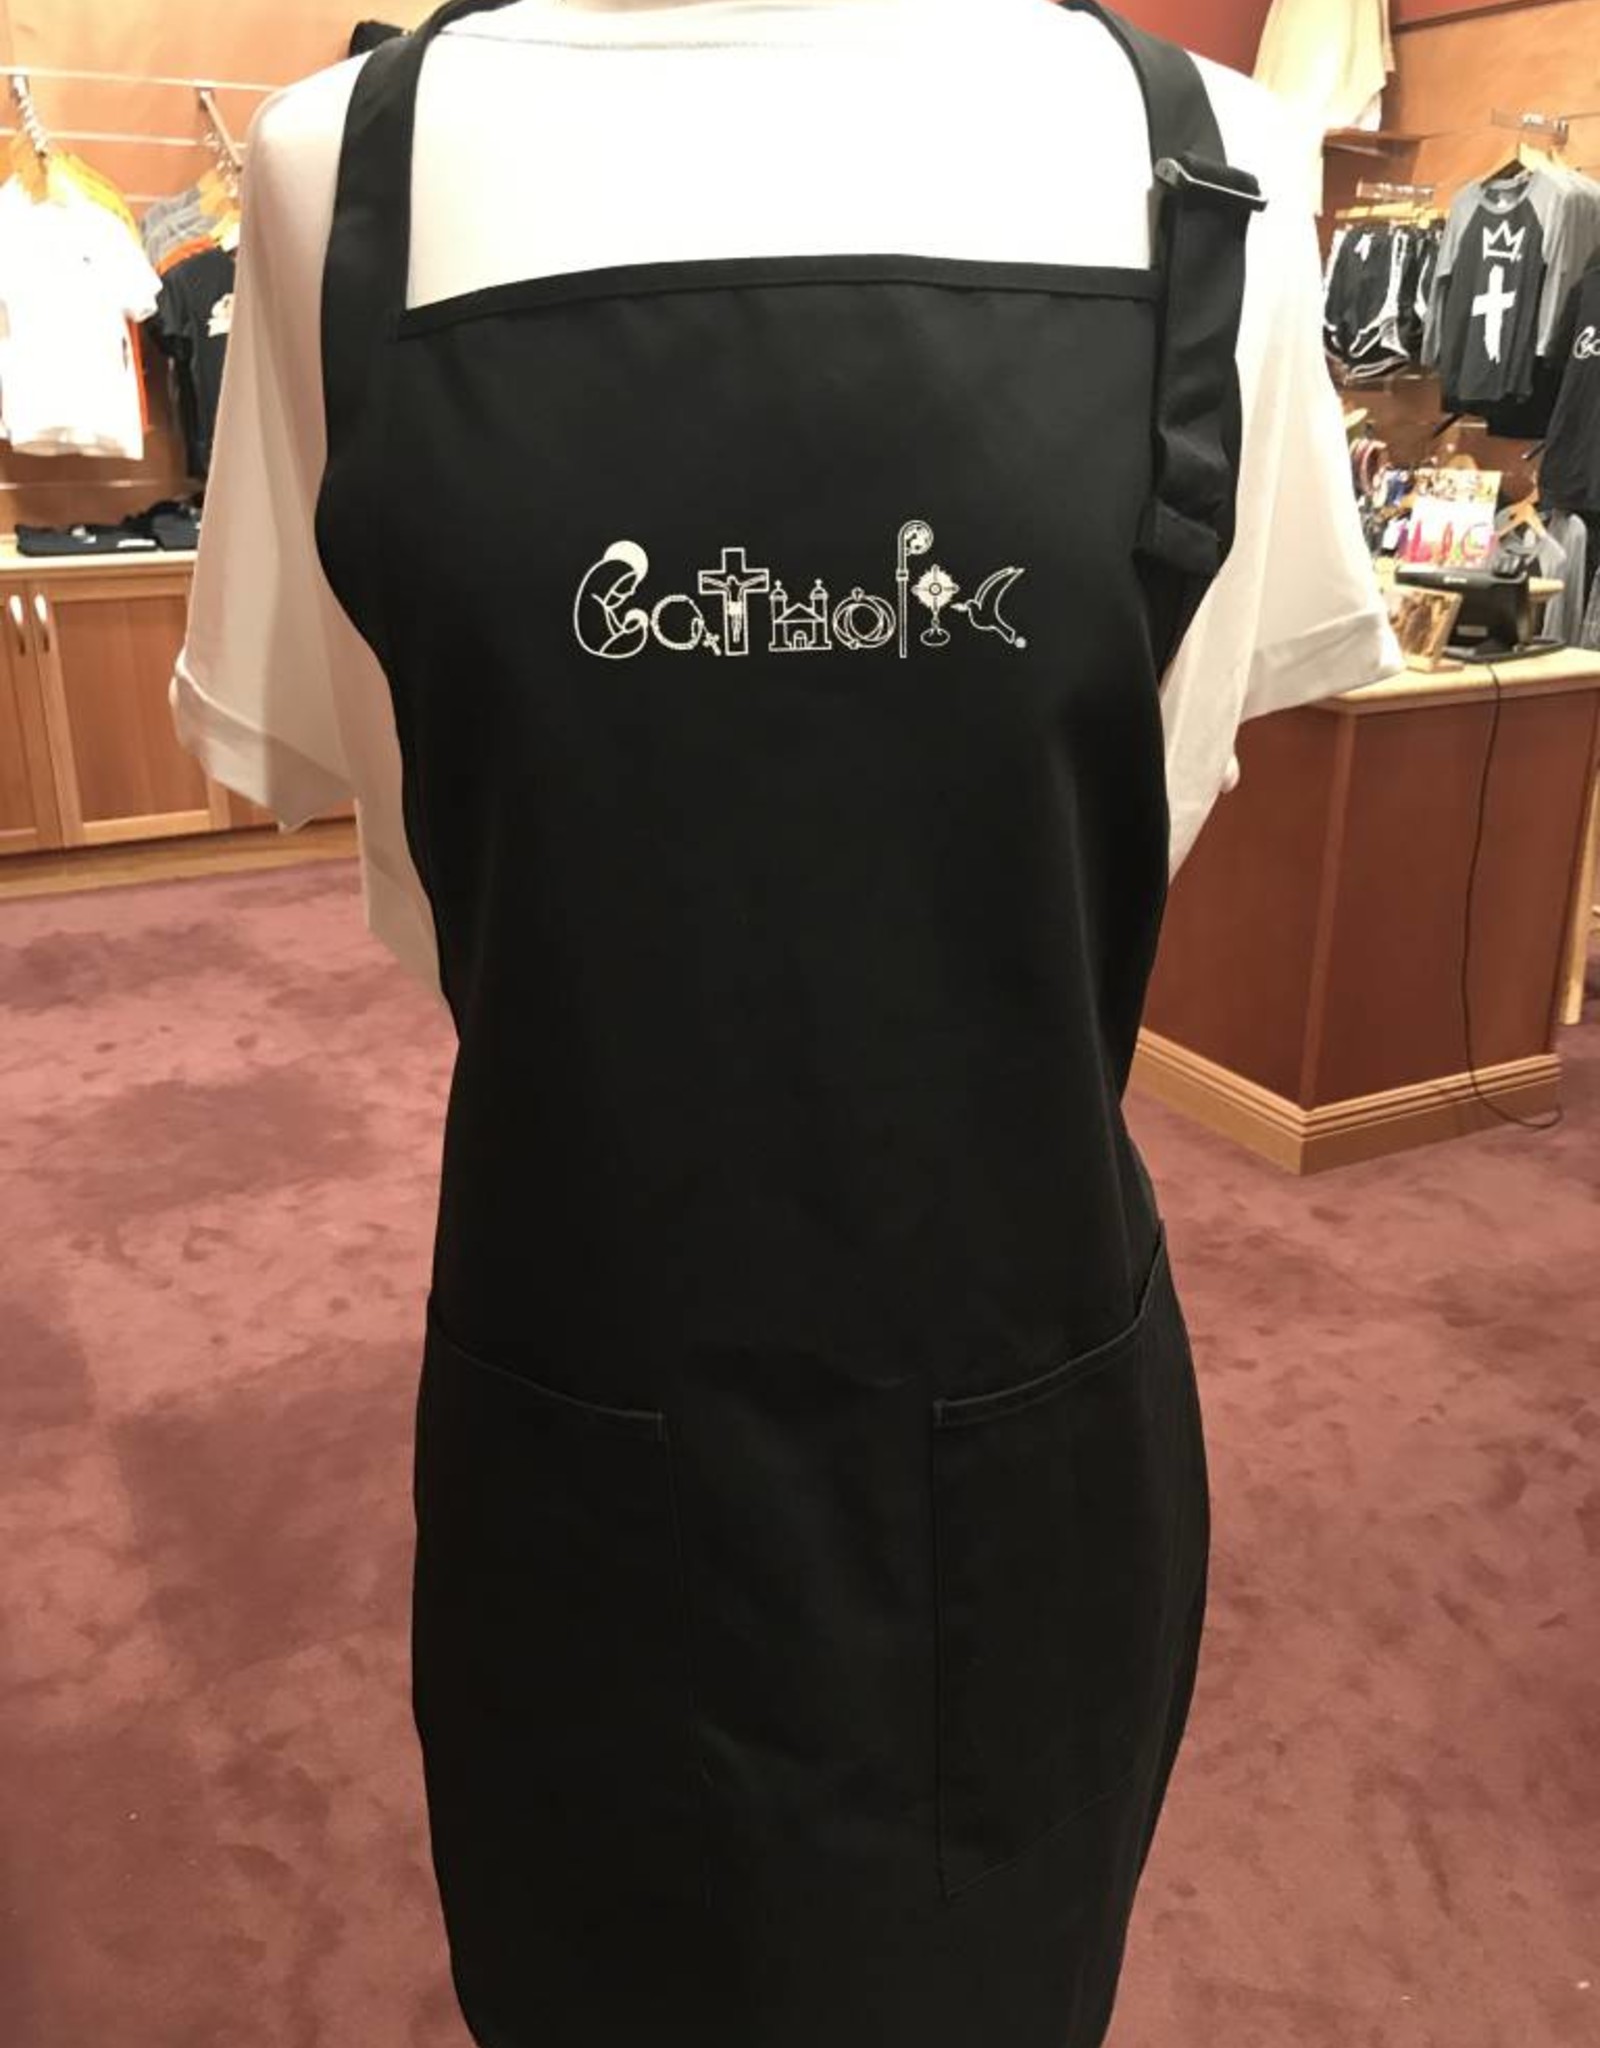 Catholic apron